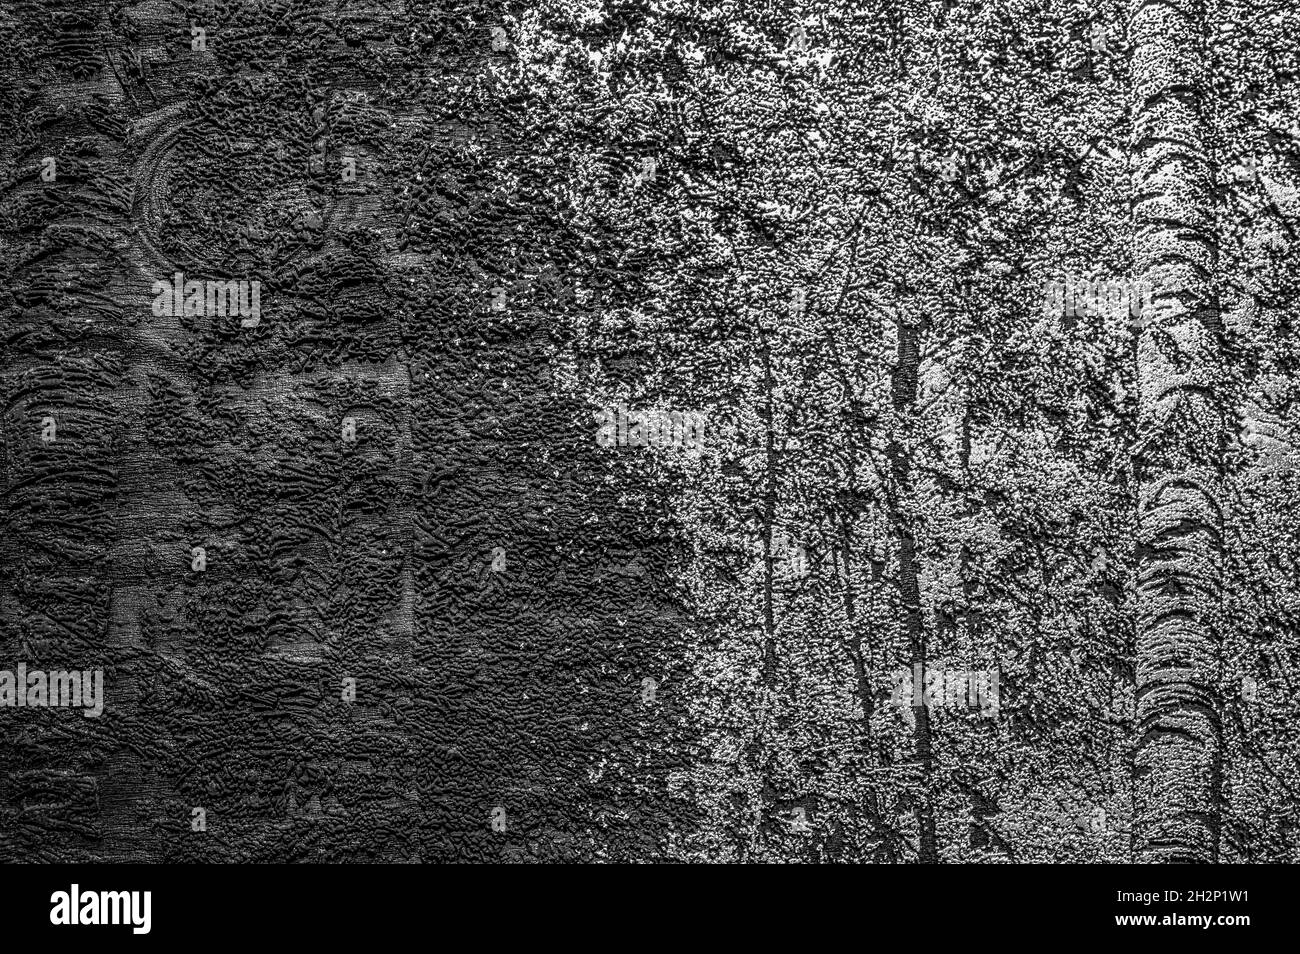 Abstraktes Bild, das einen allmählichen Transformationsprozess eines dichten Waldes in das nichts darstellt. Schwarz und Weiß. Stockfoto